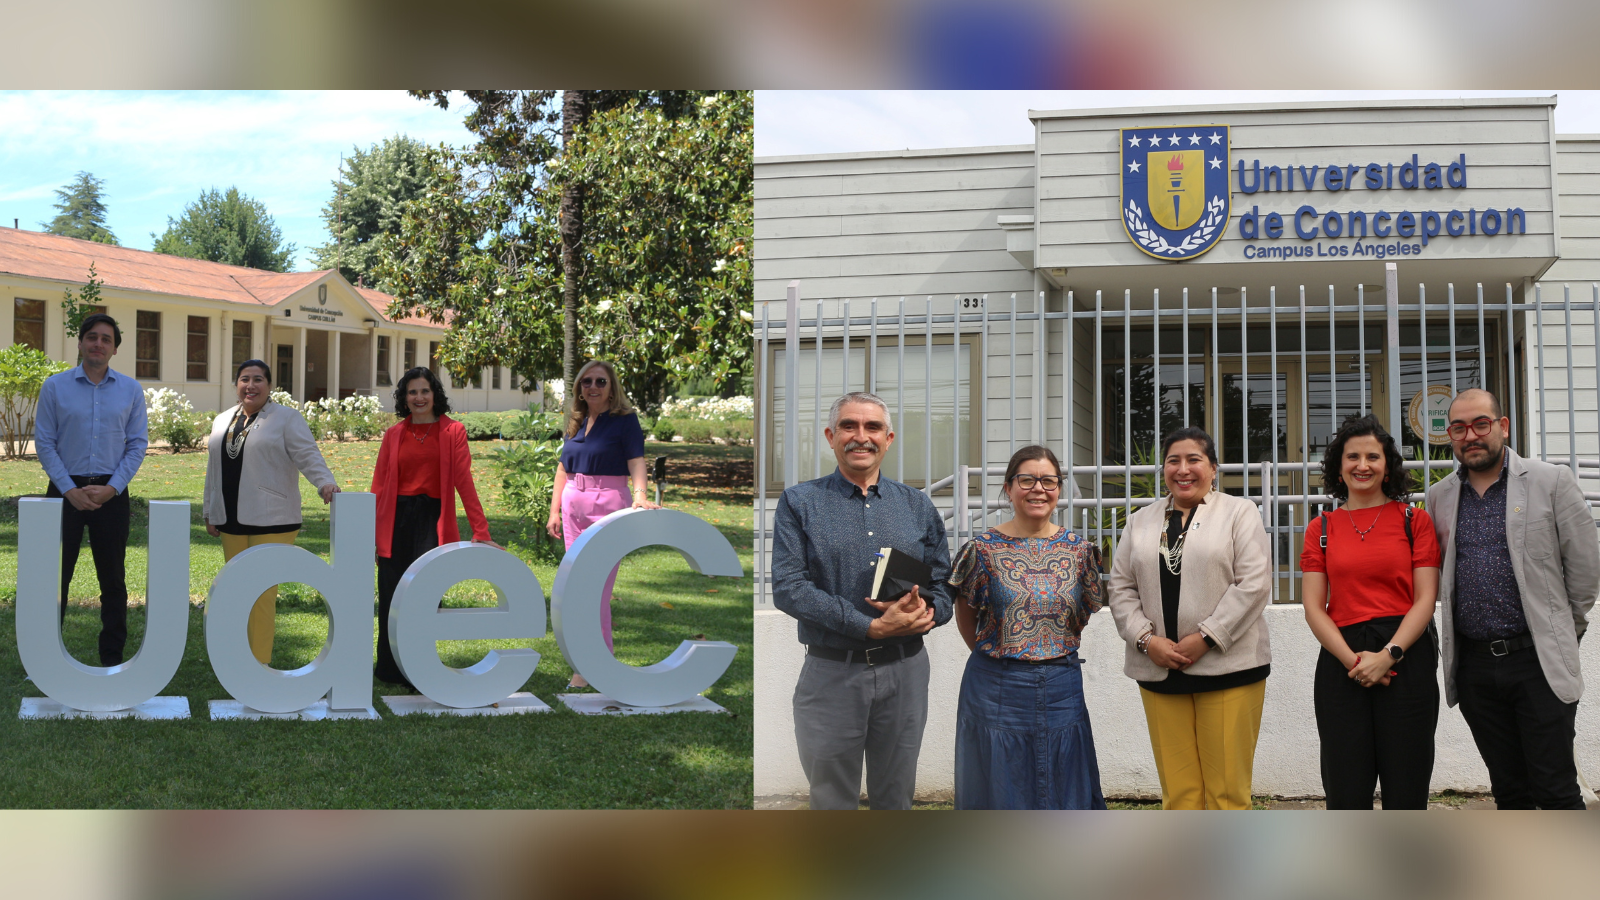 Imagen que muestra dos fotografías grupales del equipo de Bibliotecas UdeC, a la derecha se aprecia junto a autoridades del Campus Los Ángeles y a la izquierda con autoridades del Campus Chillán.